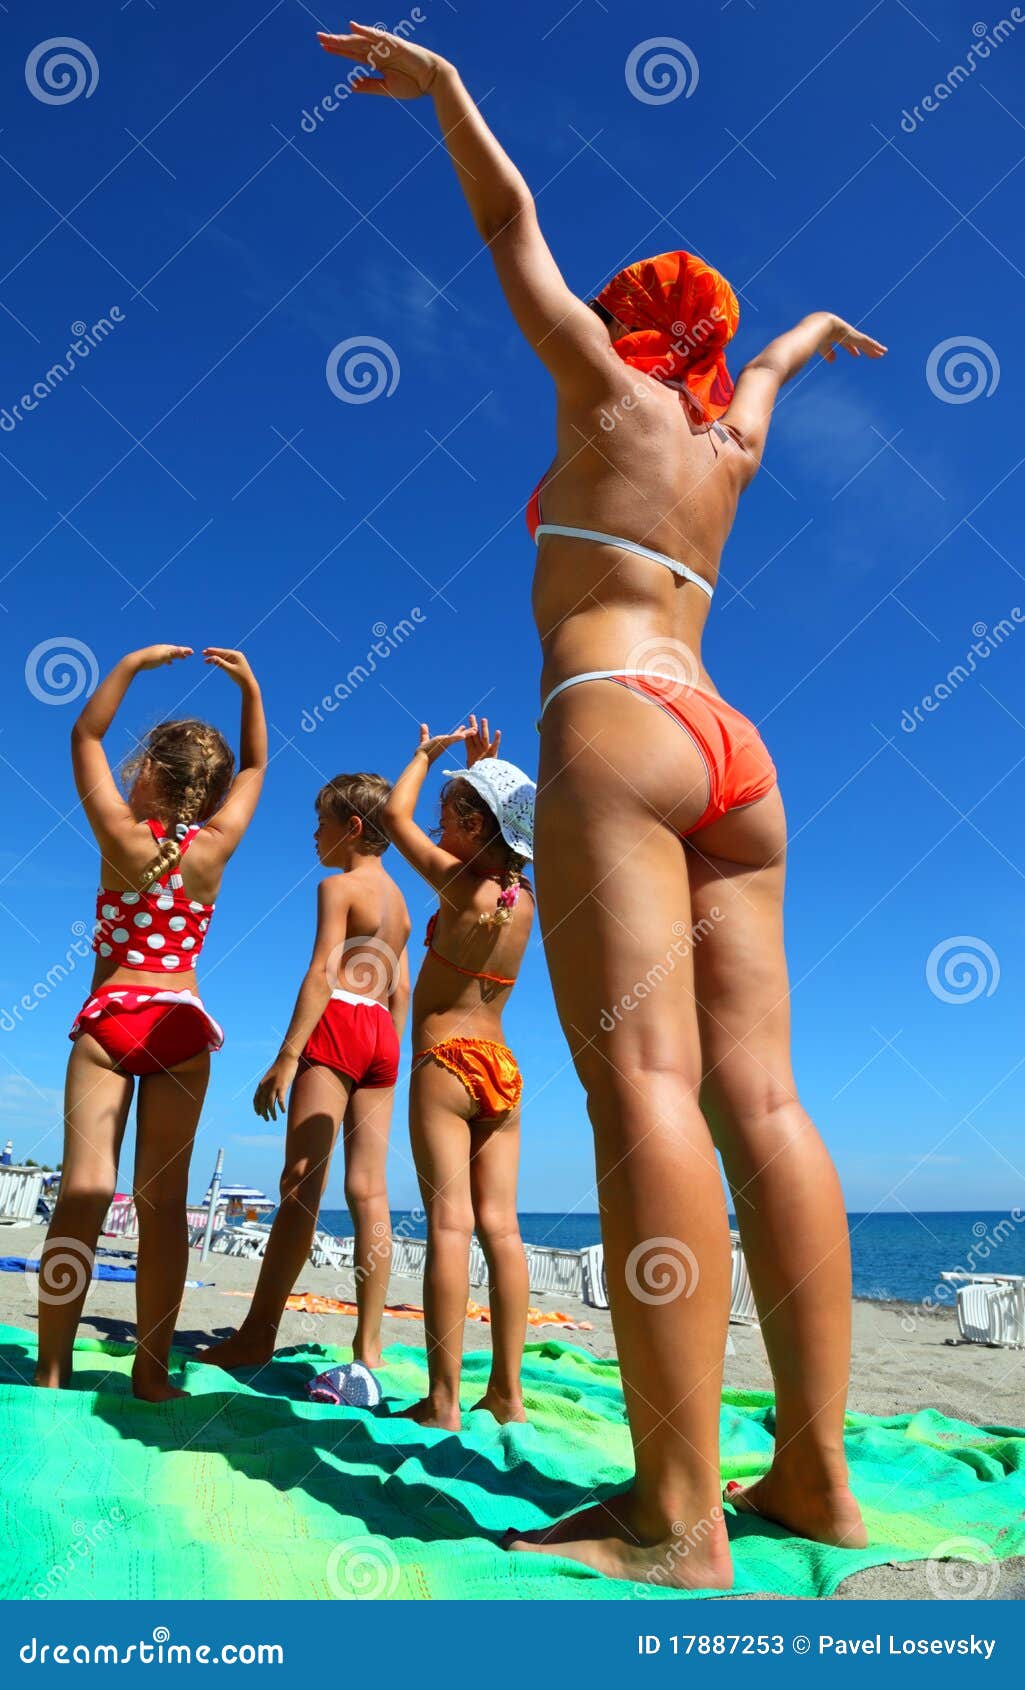 фото детей на голом пляже фото 96